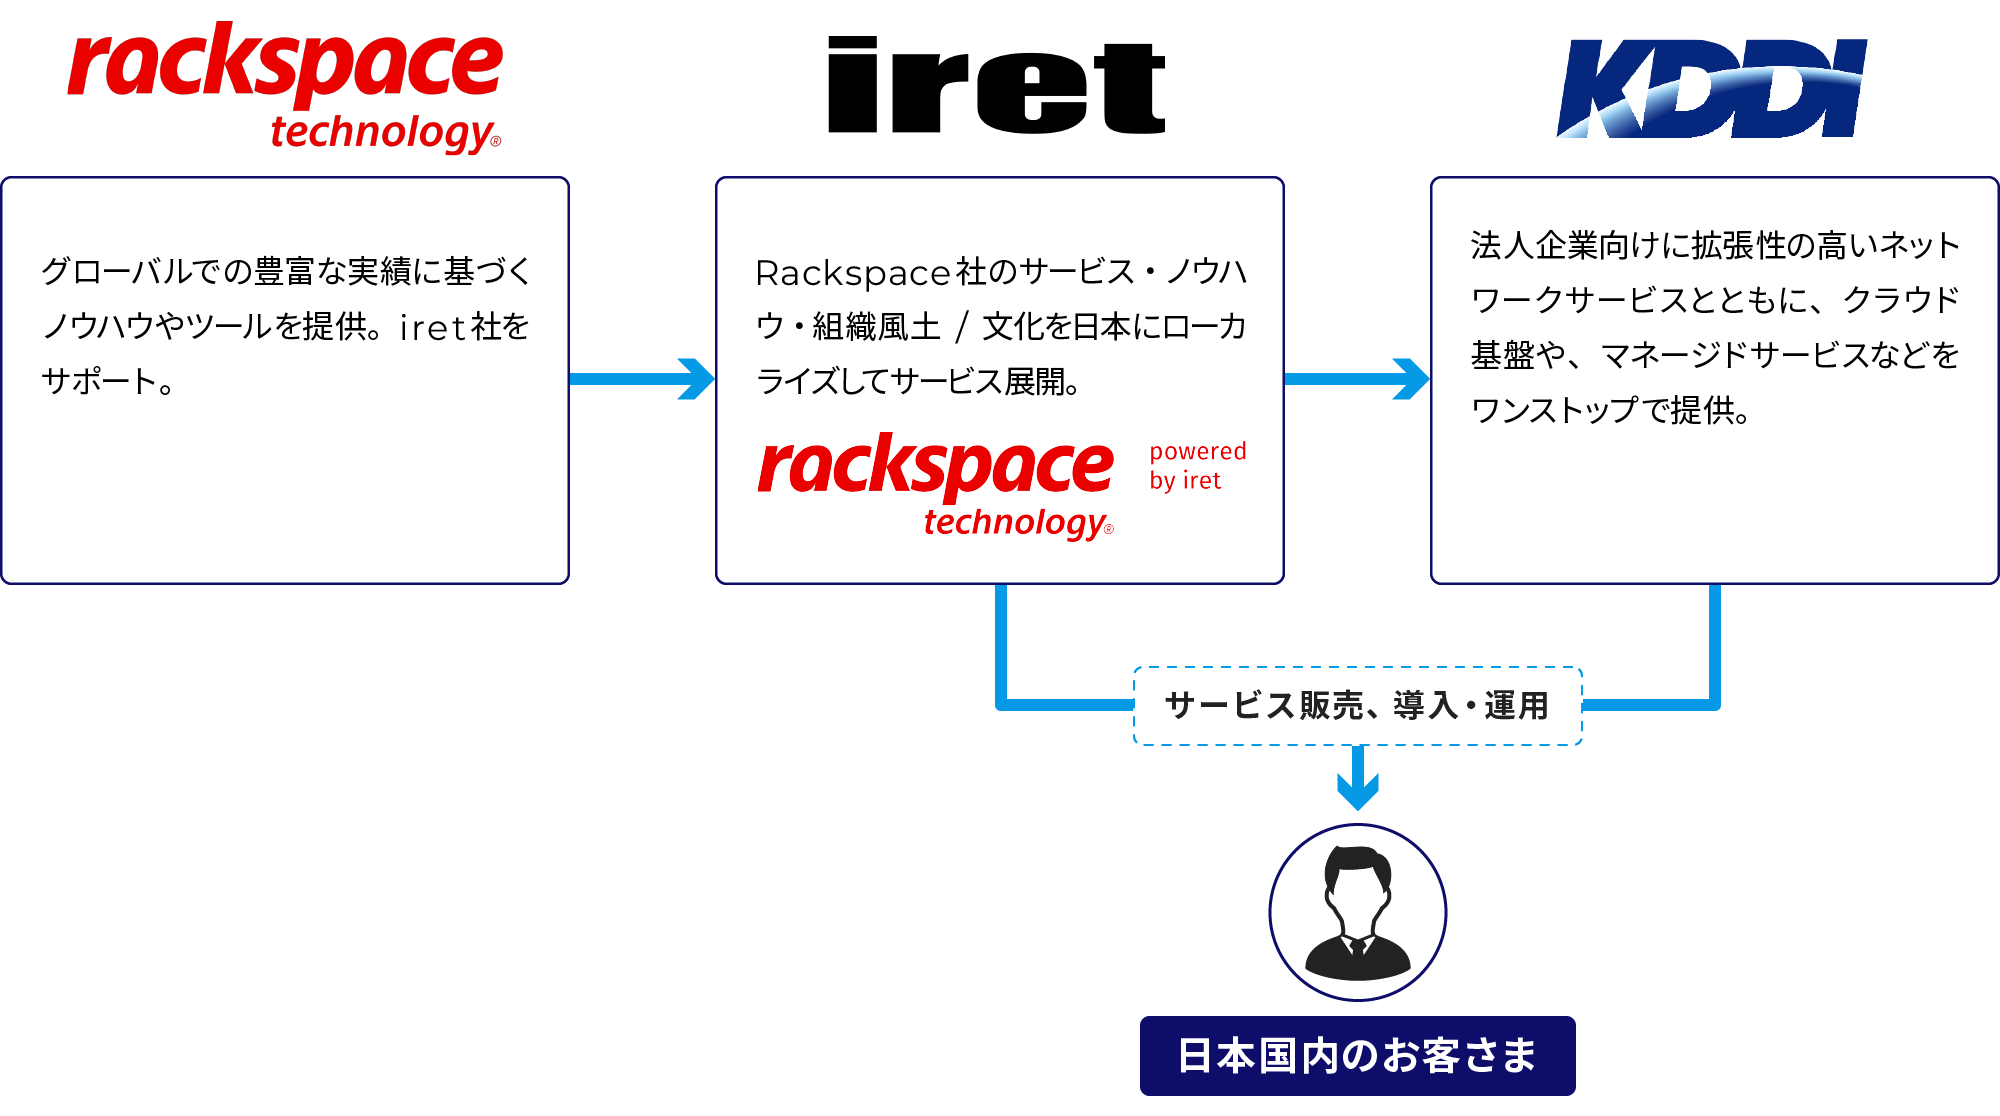 AWSにRackspaceのノウハウおよびツールを活用し、企業のDXと事業継続を支援